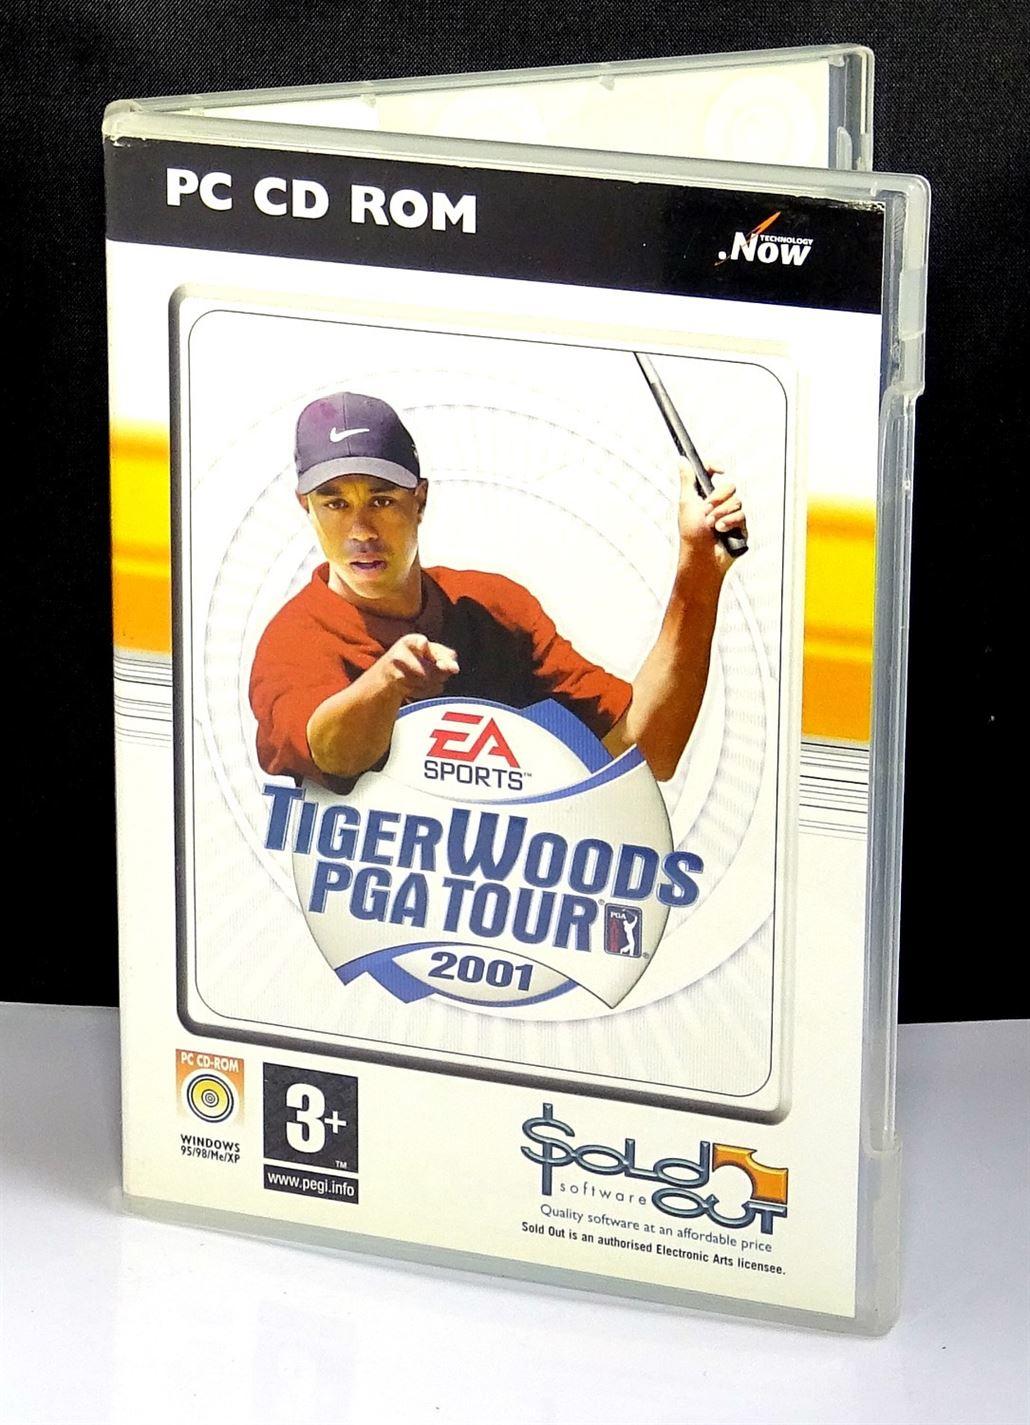 Tiger Woods PGA Tour 2001 (PC) - UK Seller